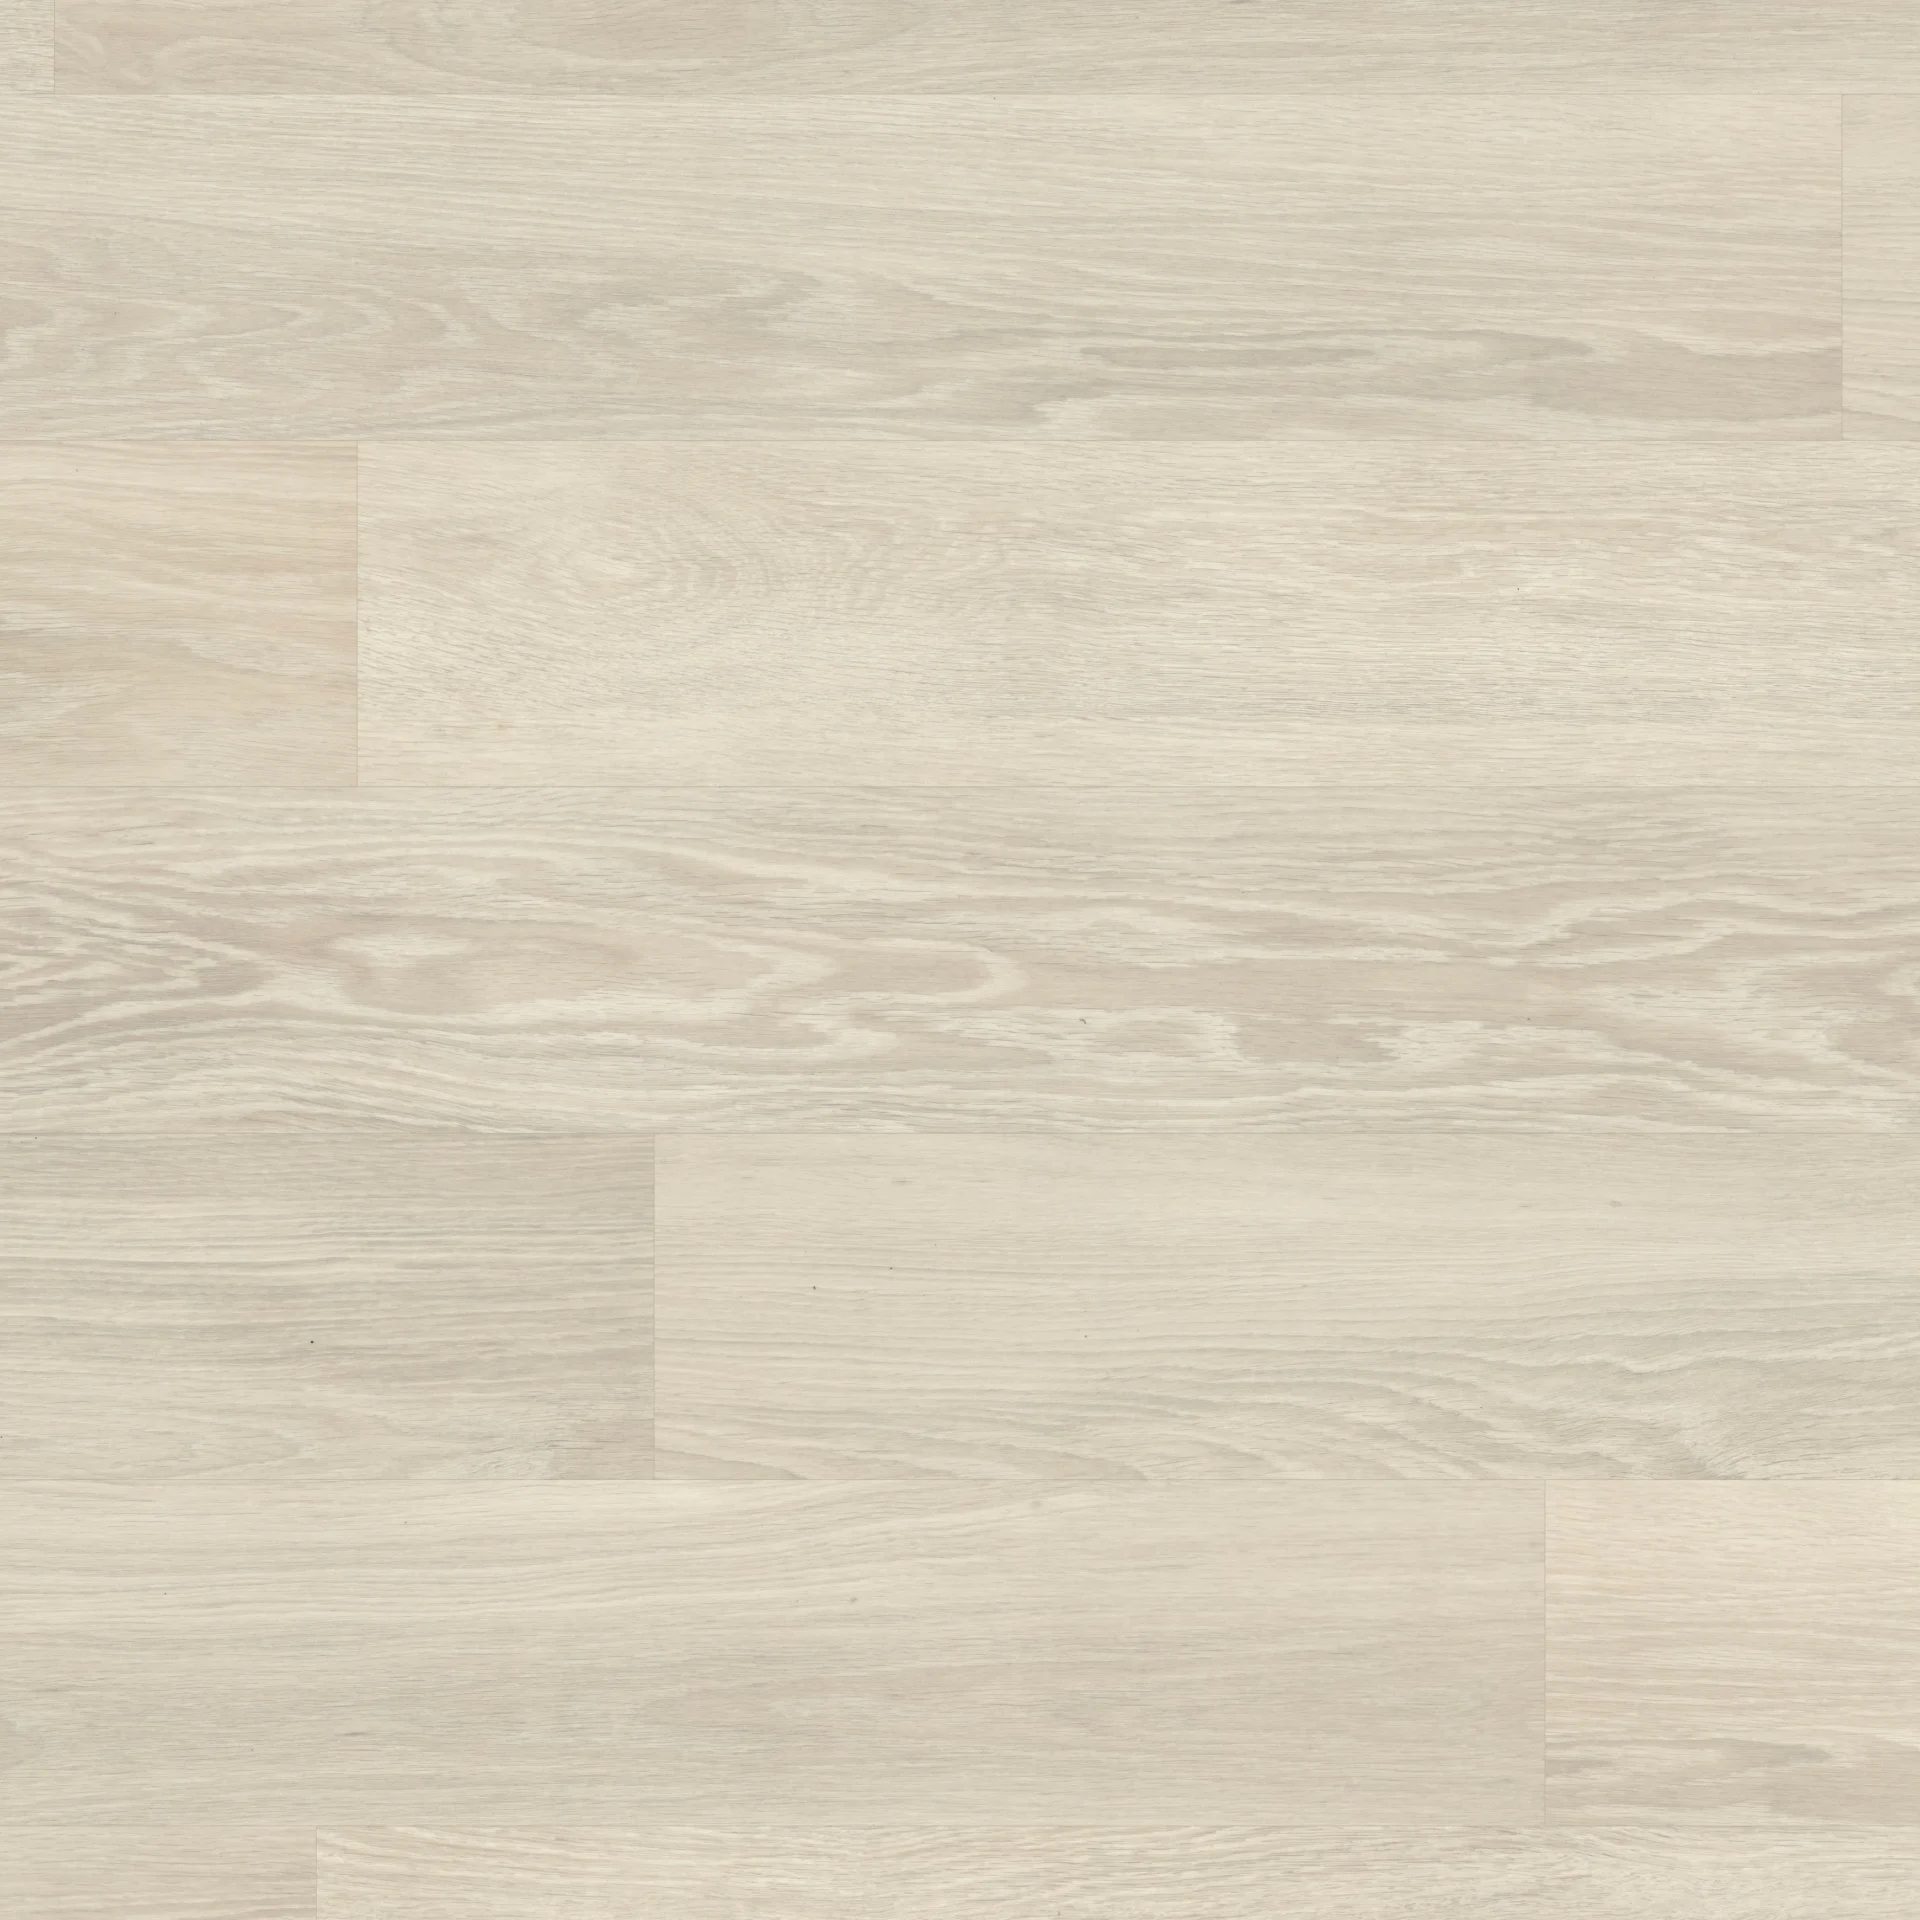 Karndean Knight Tile - Nordic Limed Oak KP153 Safety Flooring